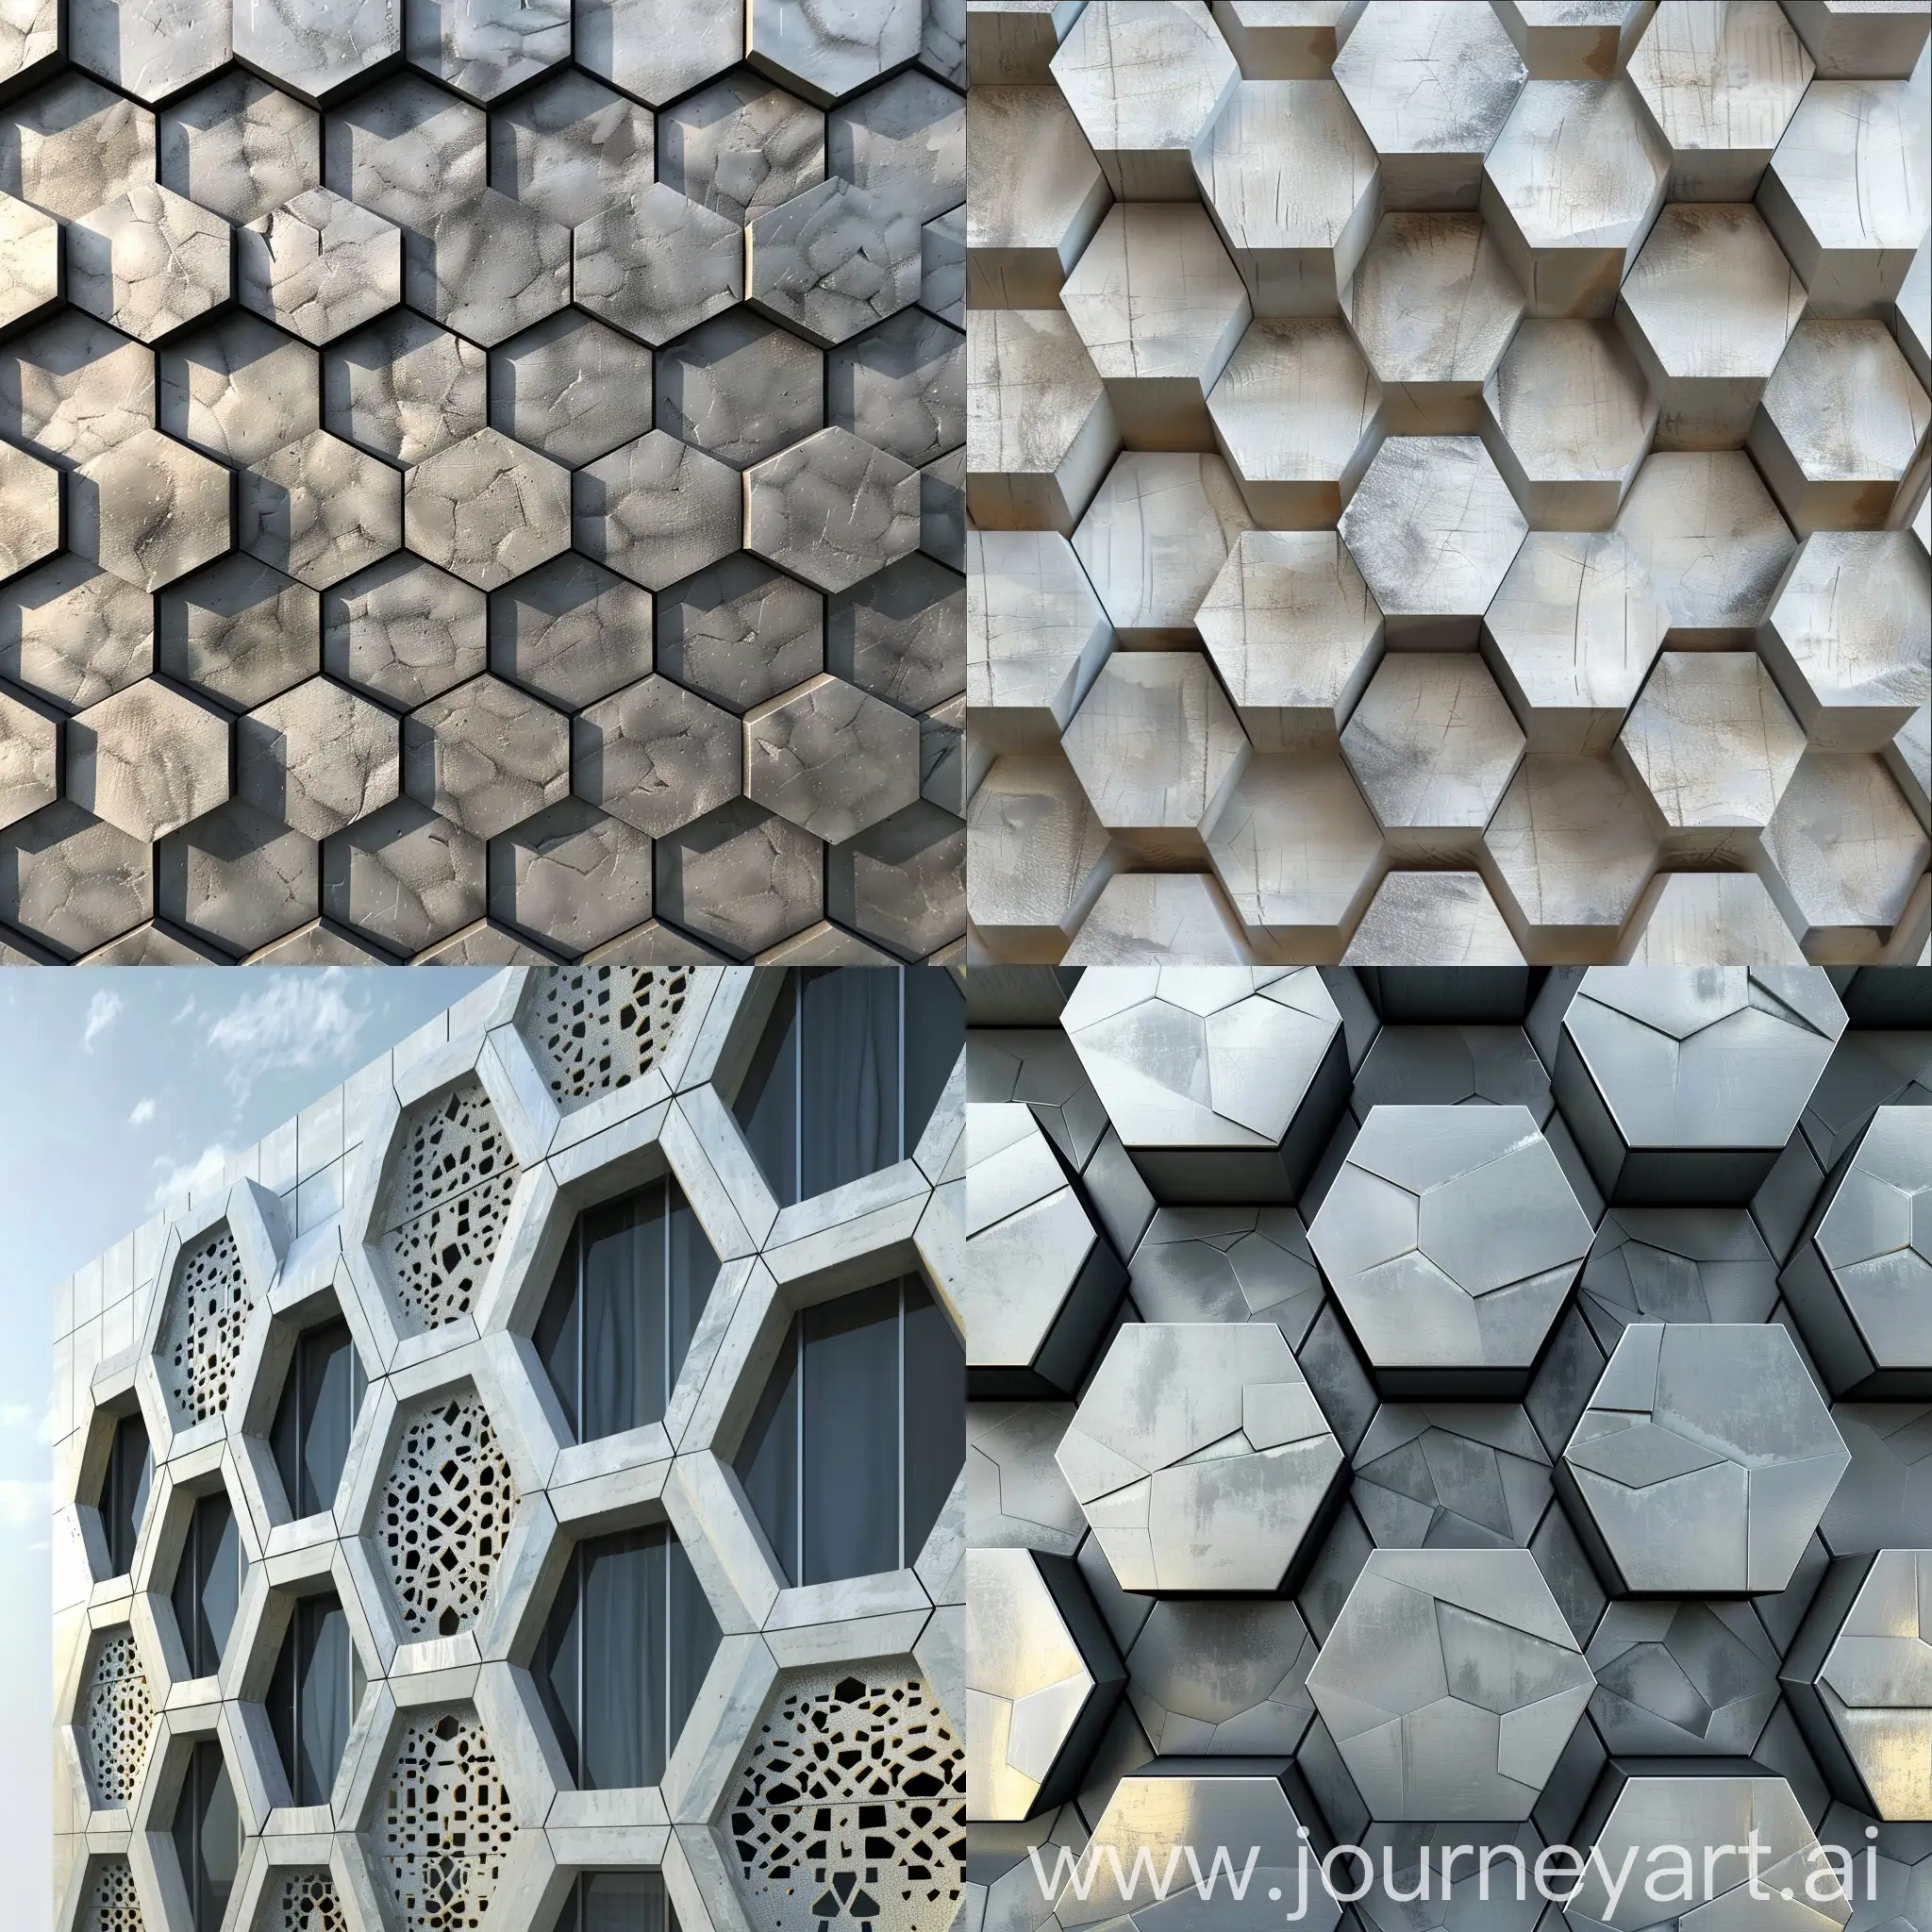 Hexagonal-Parametric-Architecture-Facade-Design